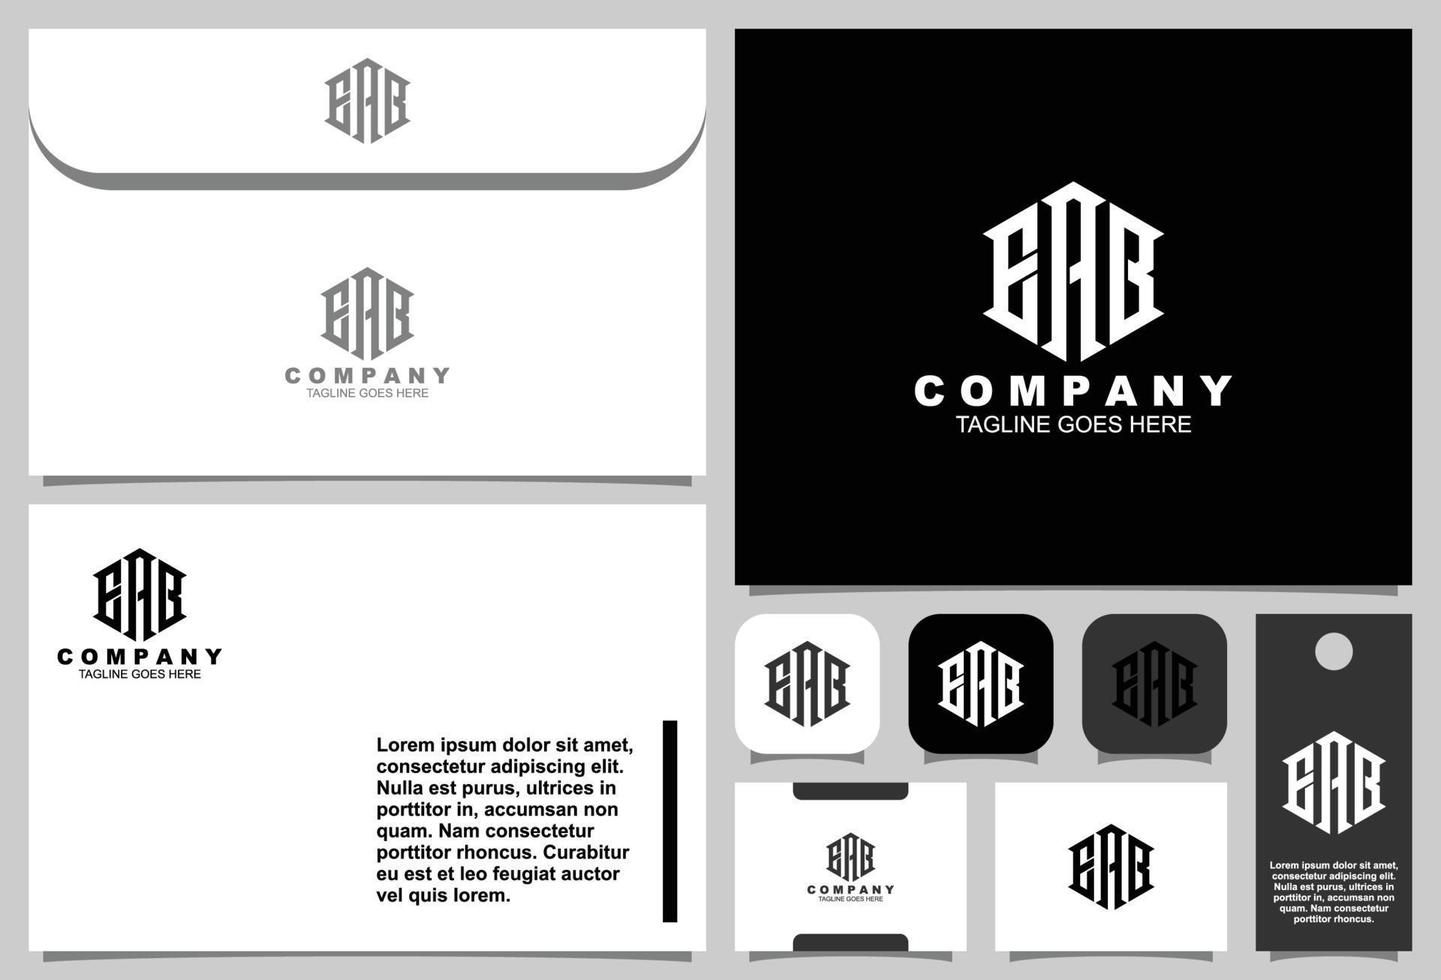 carta eab design de logotipo monograma com modelo de papelaria vetor